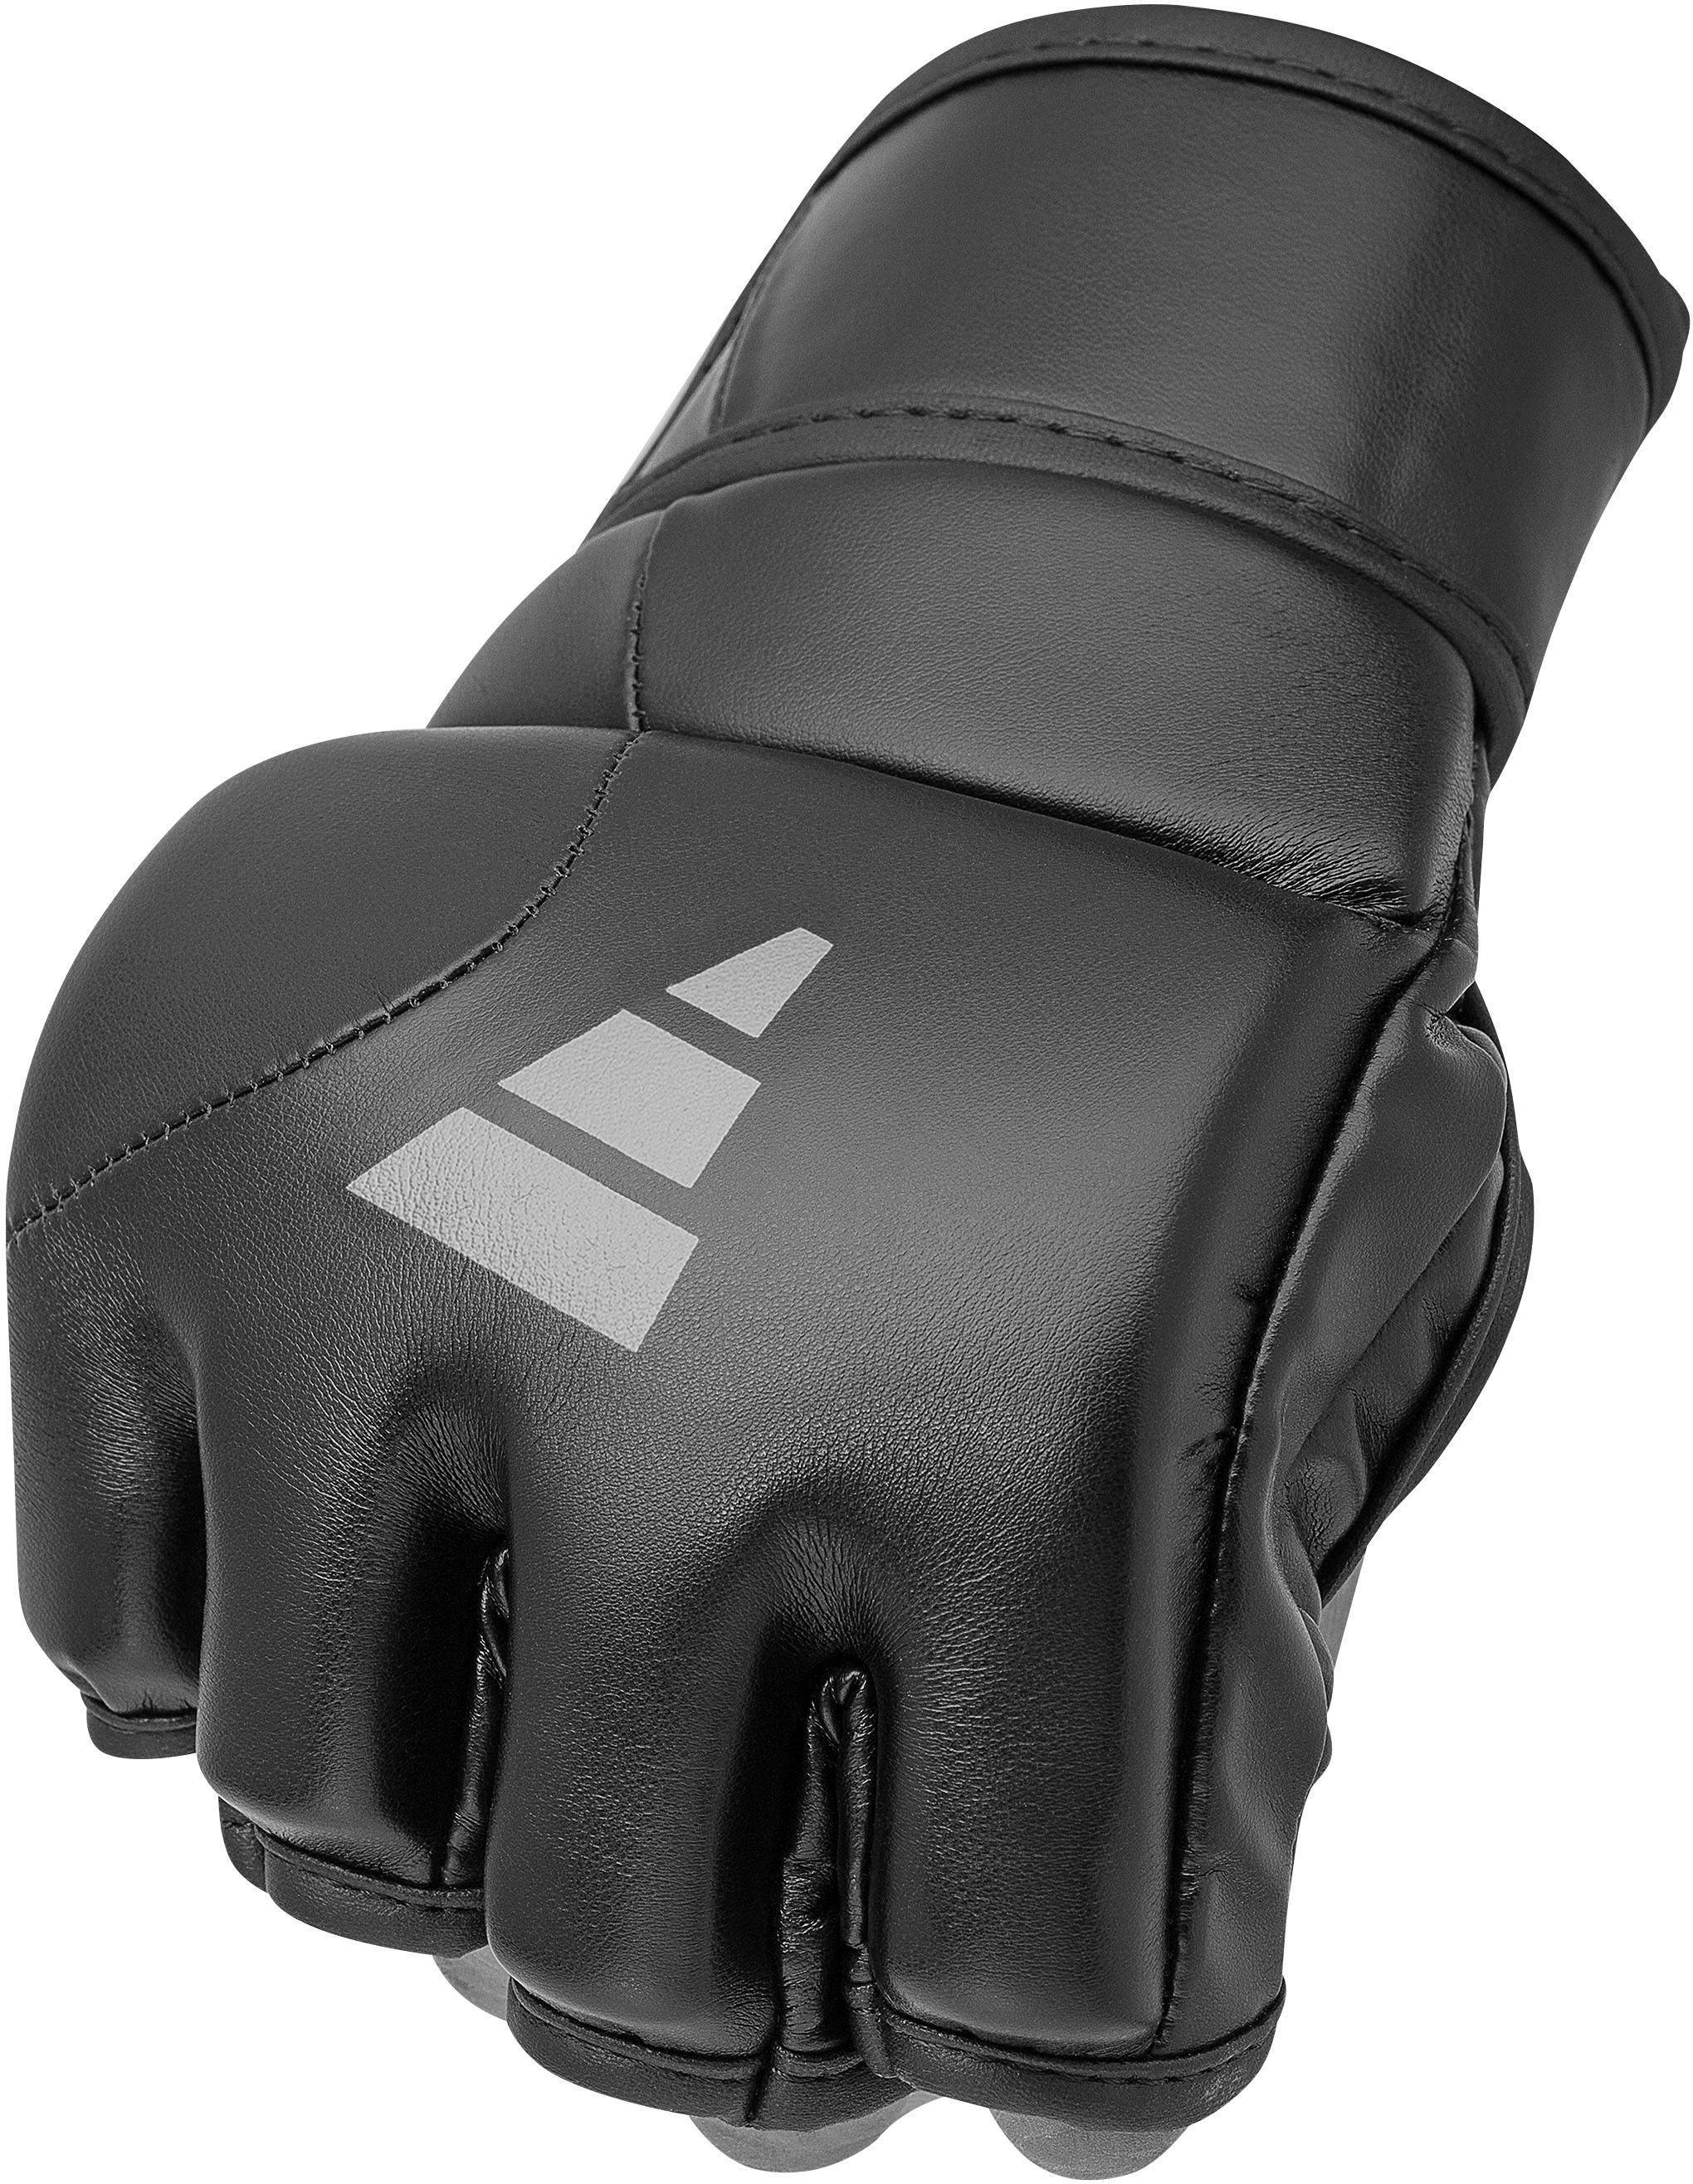 Tilt »Speed G150« adidas MMA-Handschuhe bestellen bei Performance OTTO